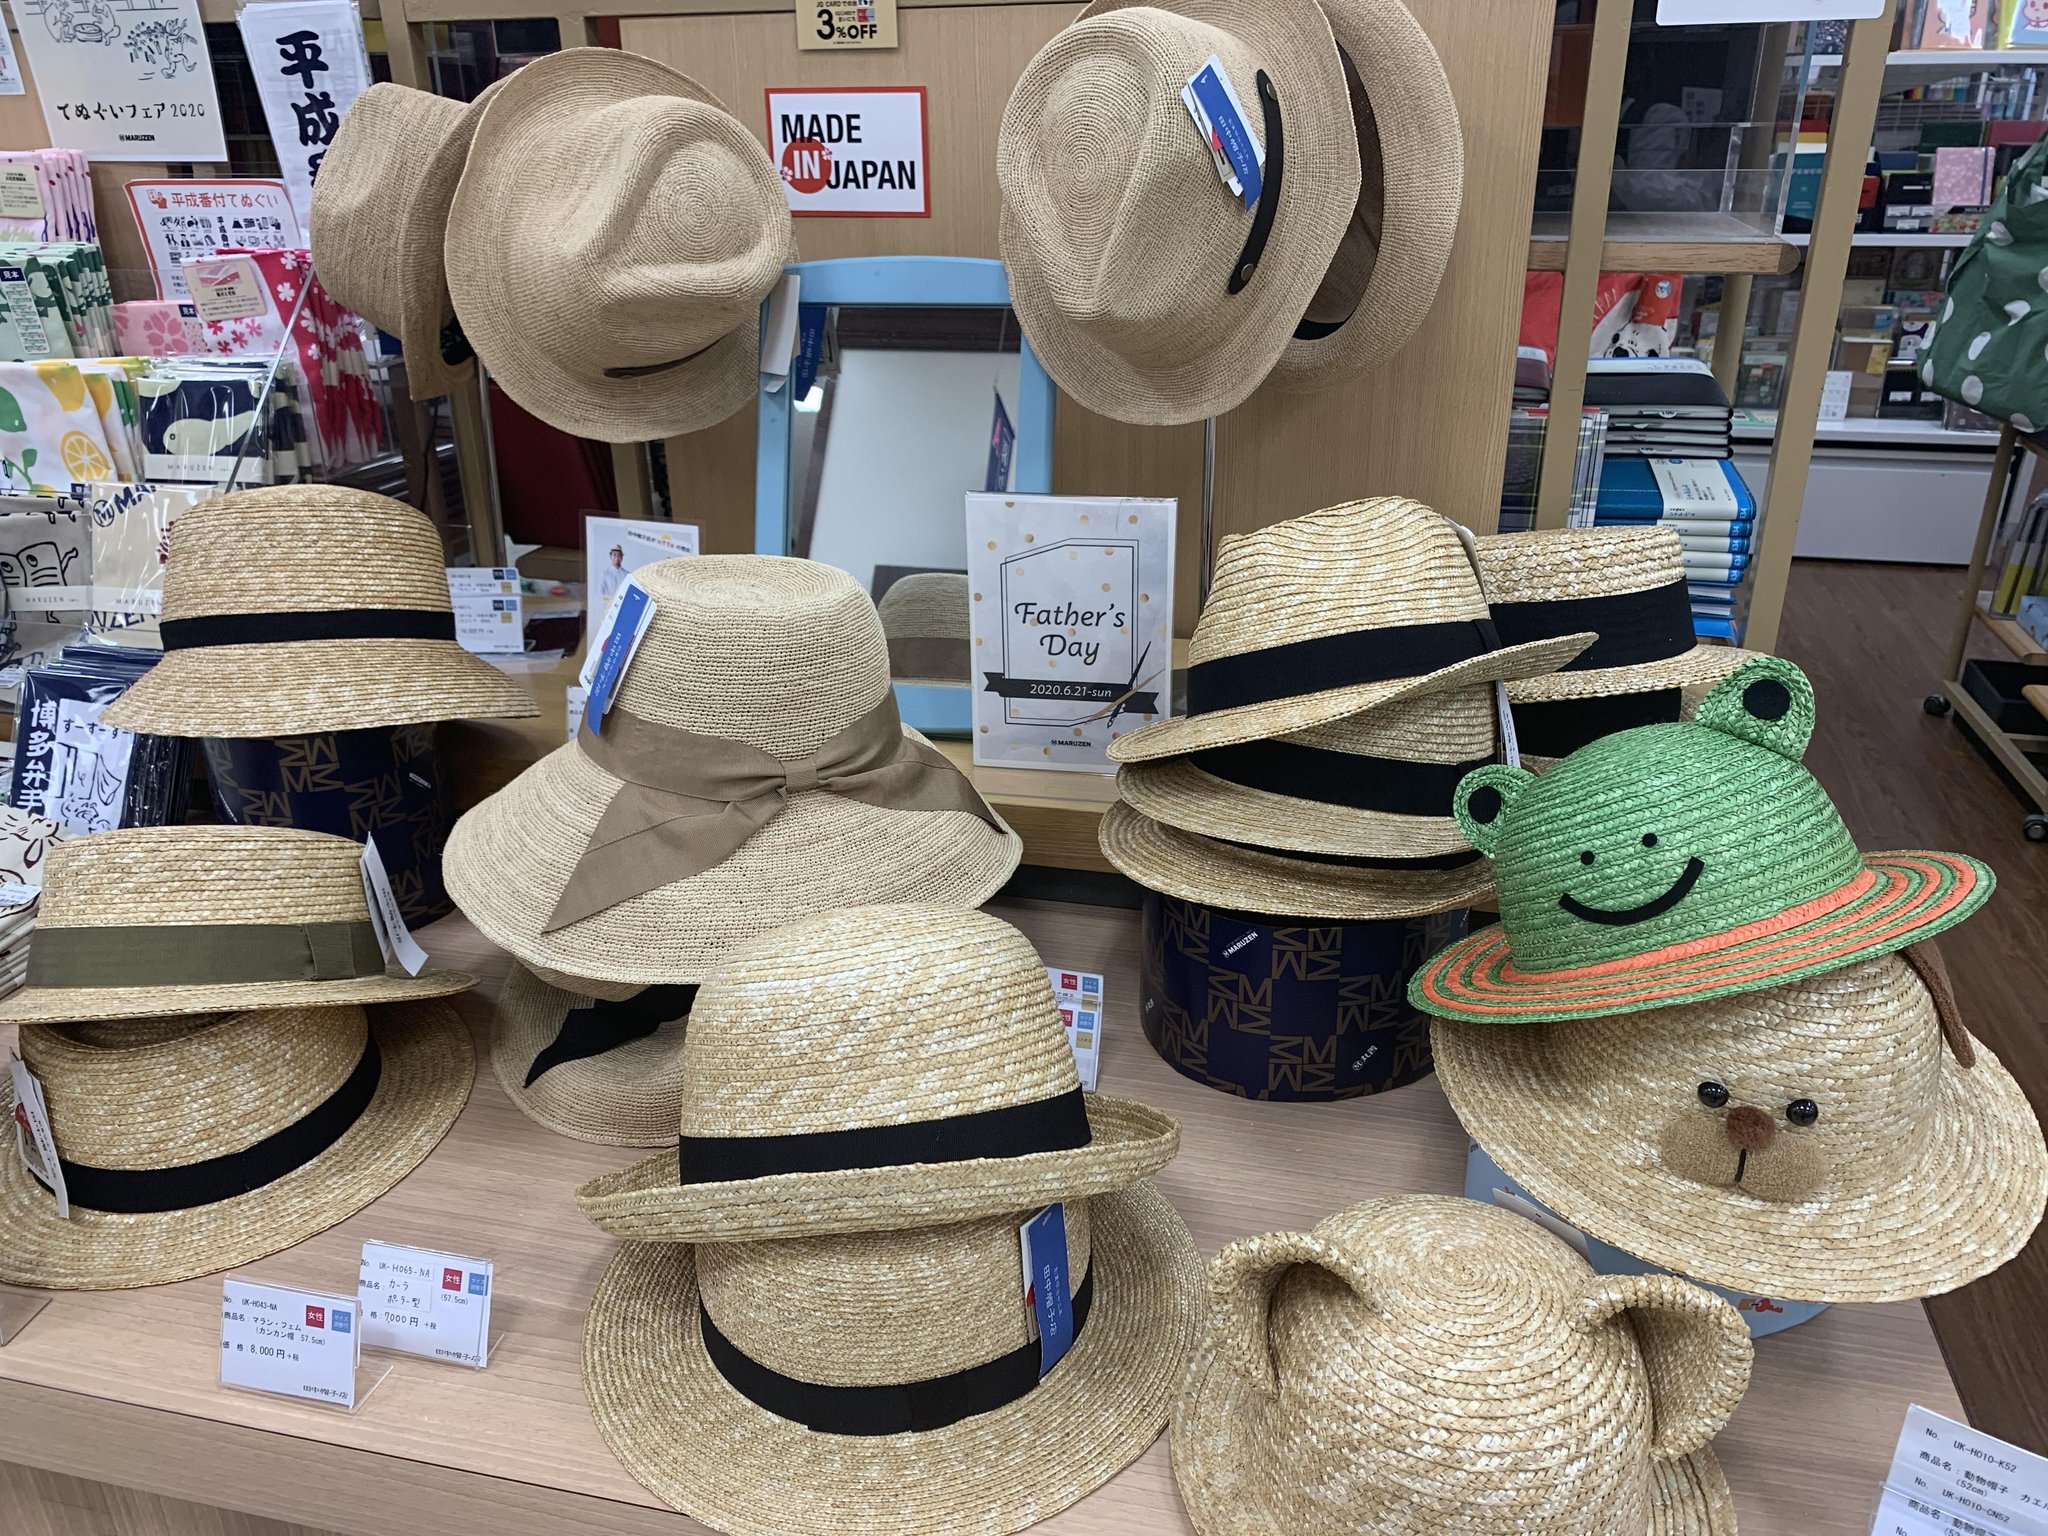 丸善博多店 福岡も暑くなりました 文具売場には 田中帽子店 の麦わら帽子が入荷しています カンカン帽やねこ耳帽 かぶりやすそうなラフィア帽 どれも素敵で甲乙つけがたい